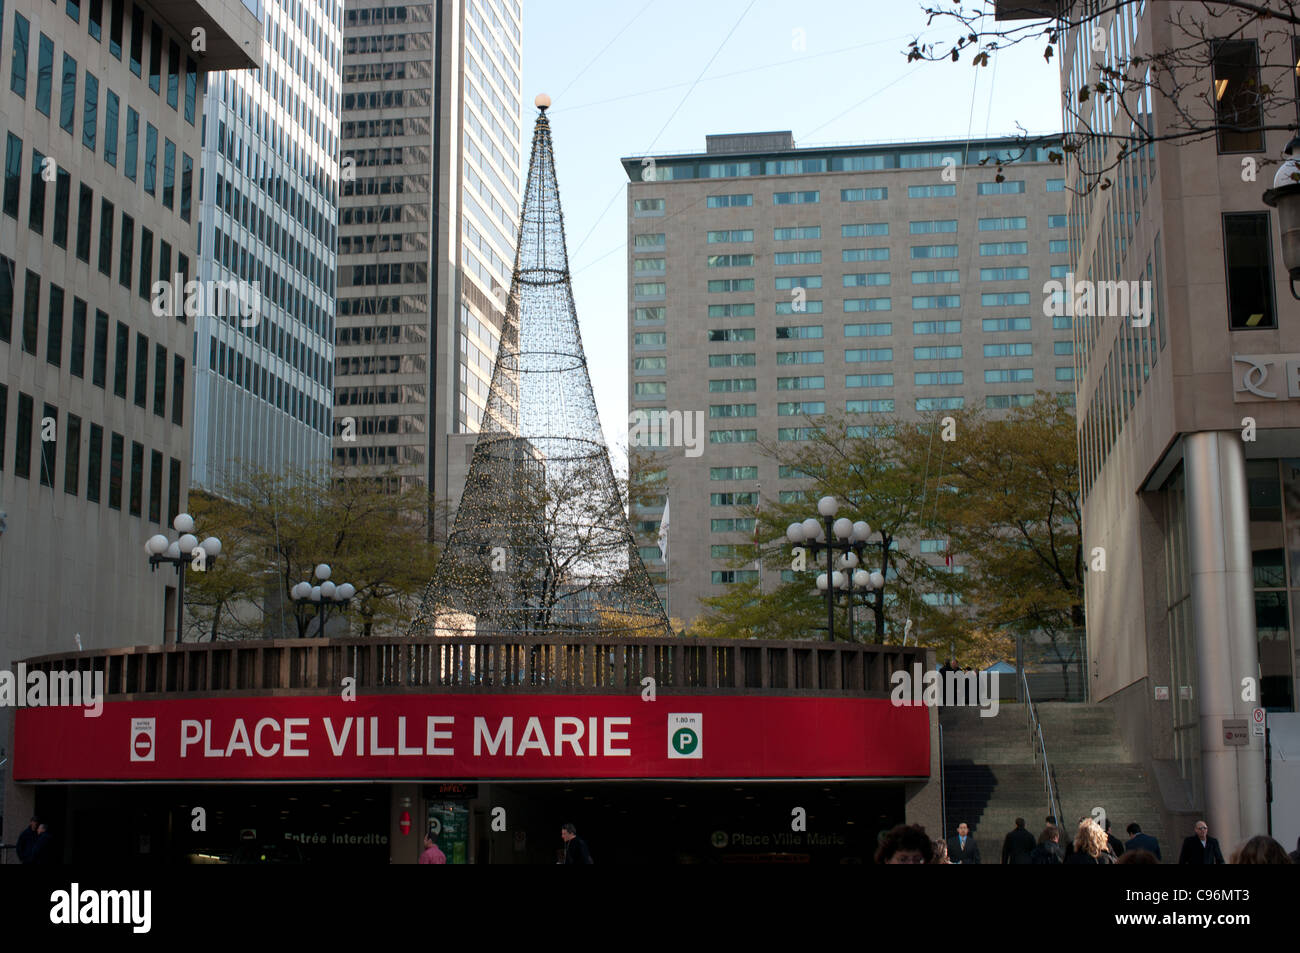 La plaza Ville Marie entrada al aparcamiento interior, Downtown, Montreal, Quebec, Canadá Foto de stock